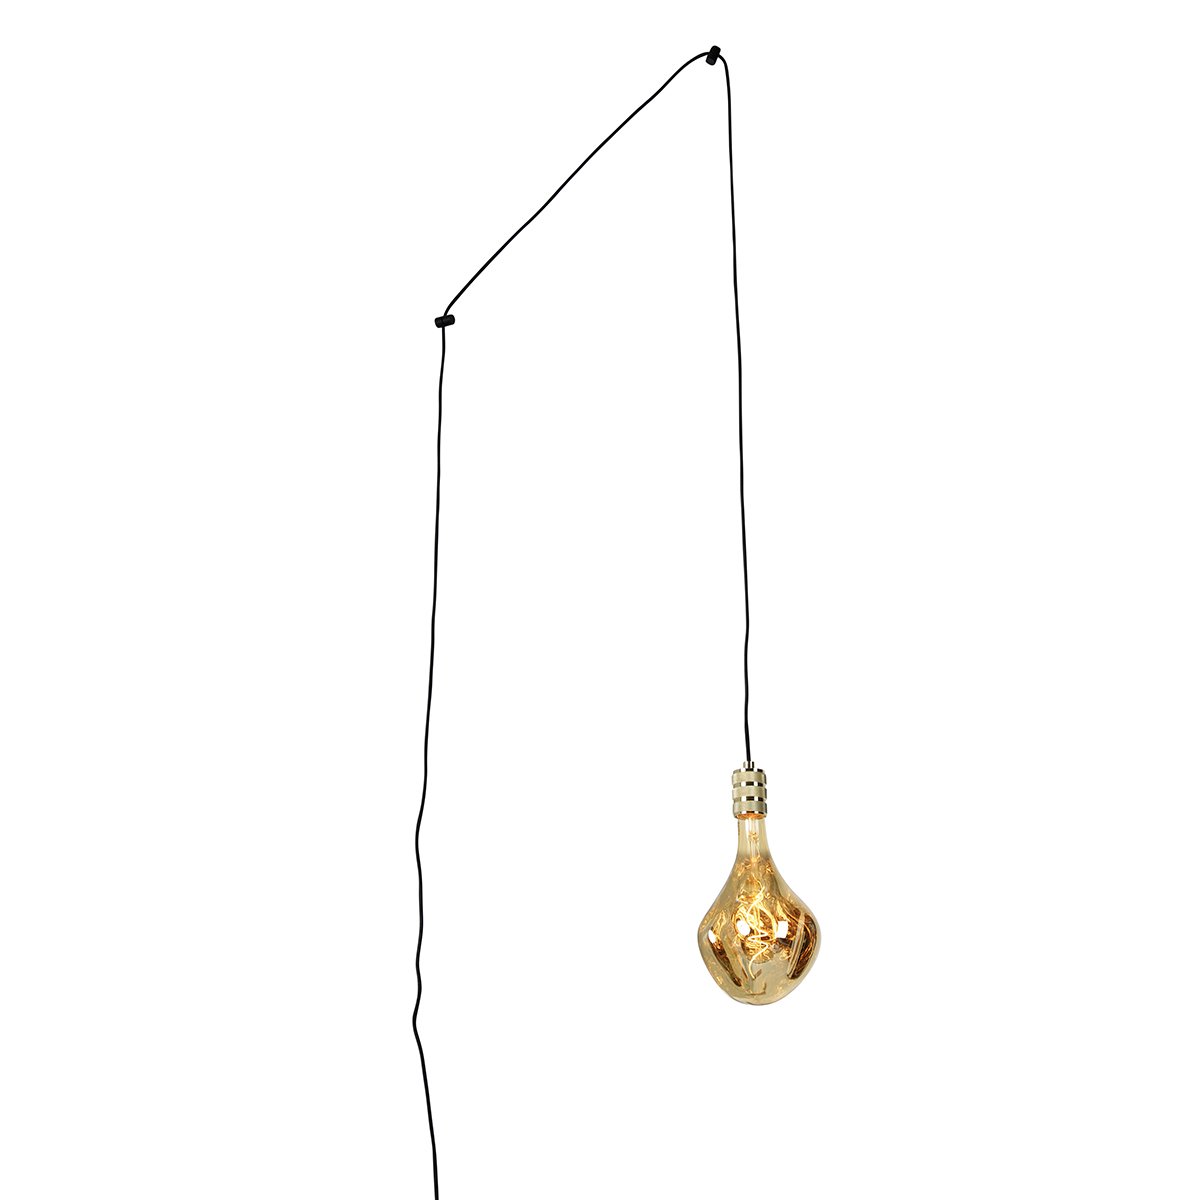 Image of Lampada a sospensione moderna oro con spina inclusa lampada a LED dimmerabile - Cavalux